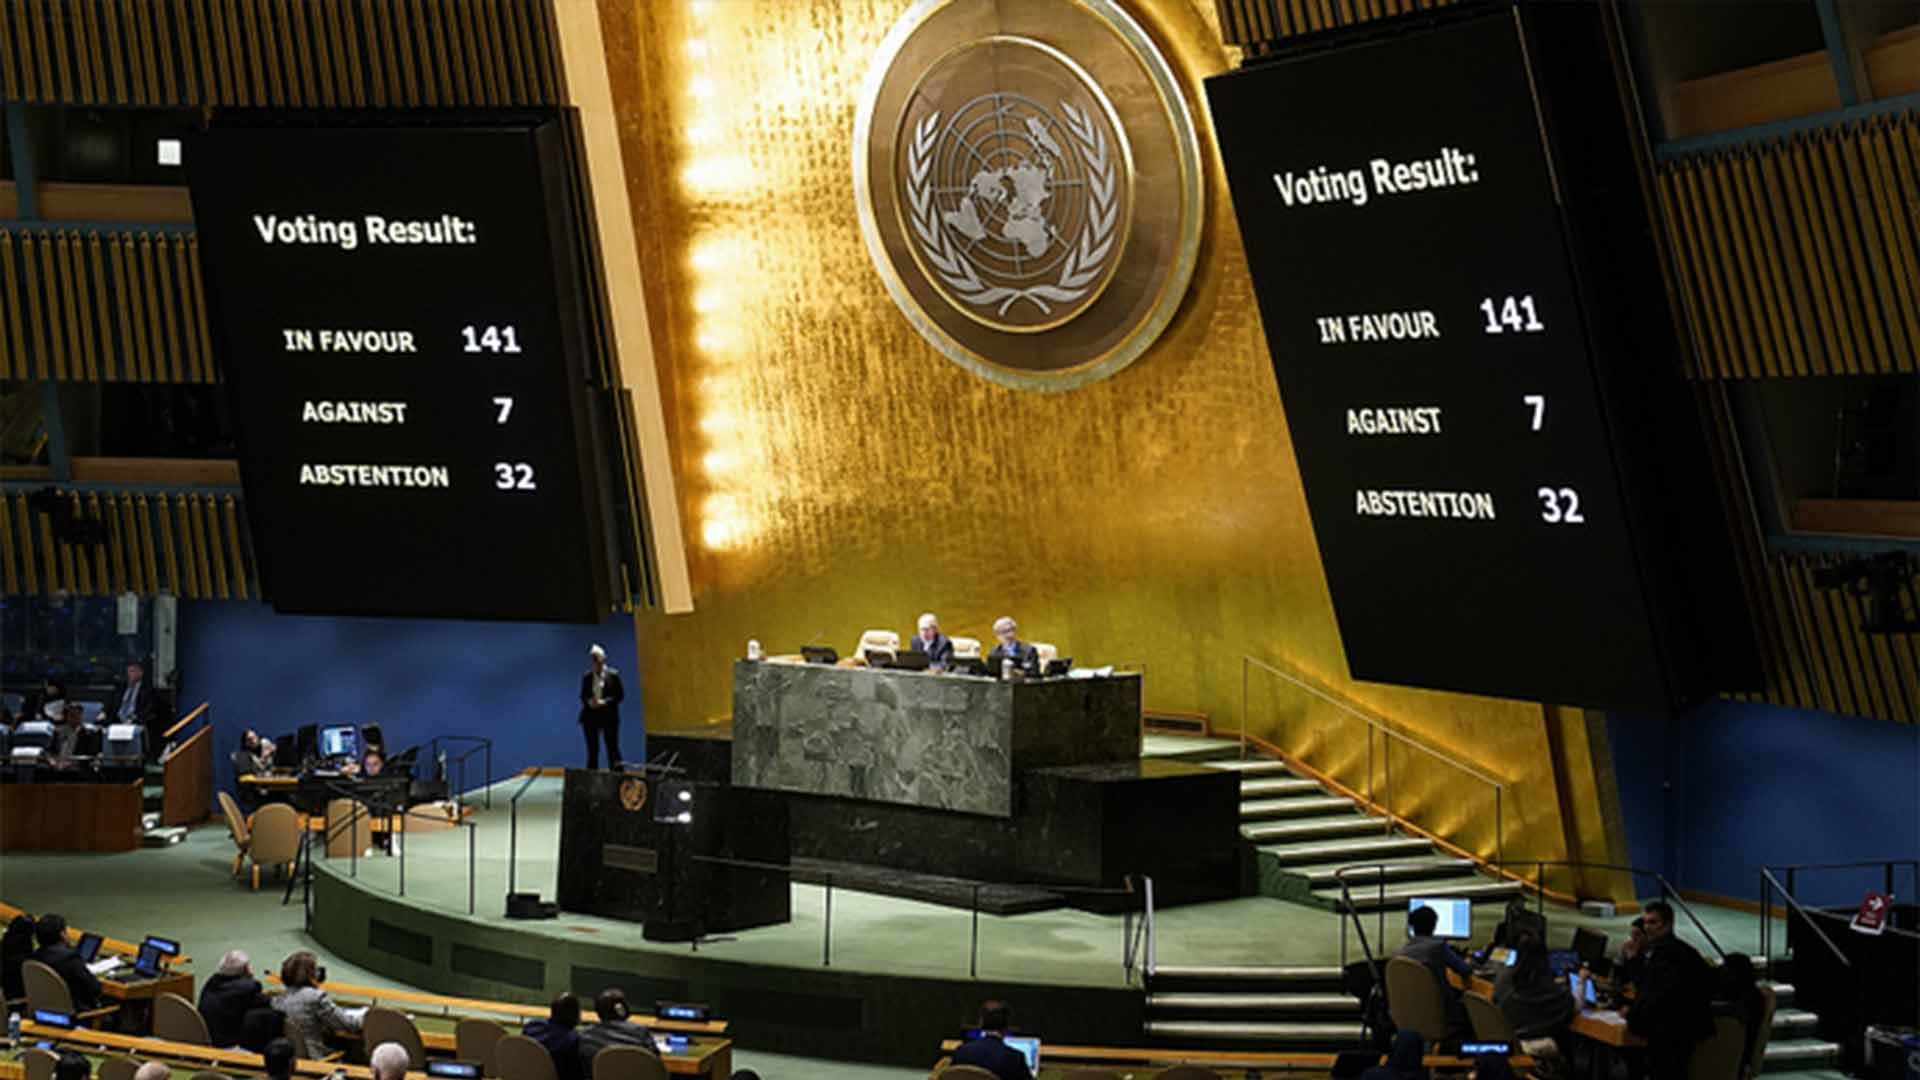 联合国通过加沙停火决议 美以等10国反对停火 | 八度空间 8TV